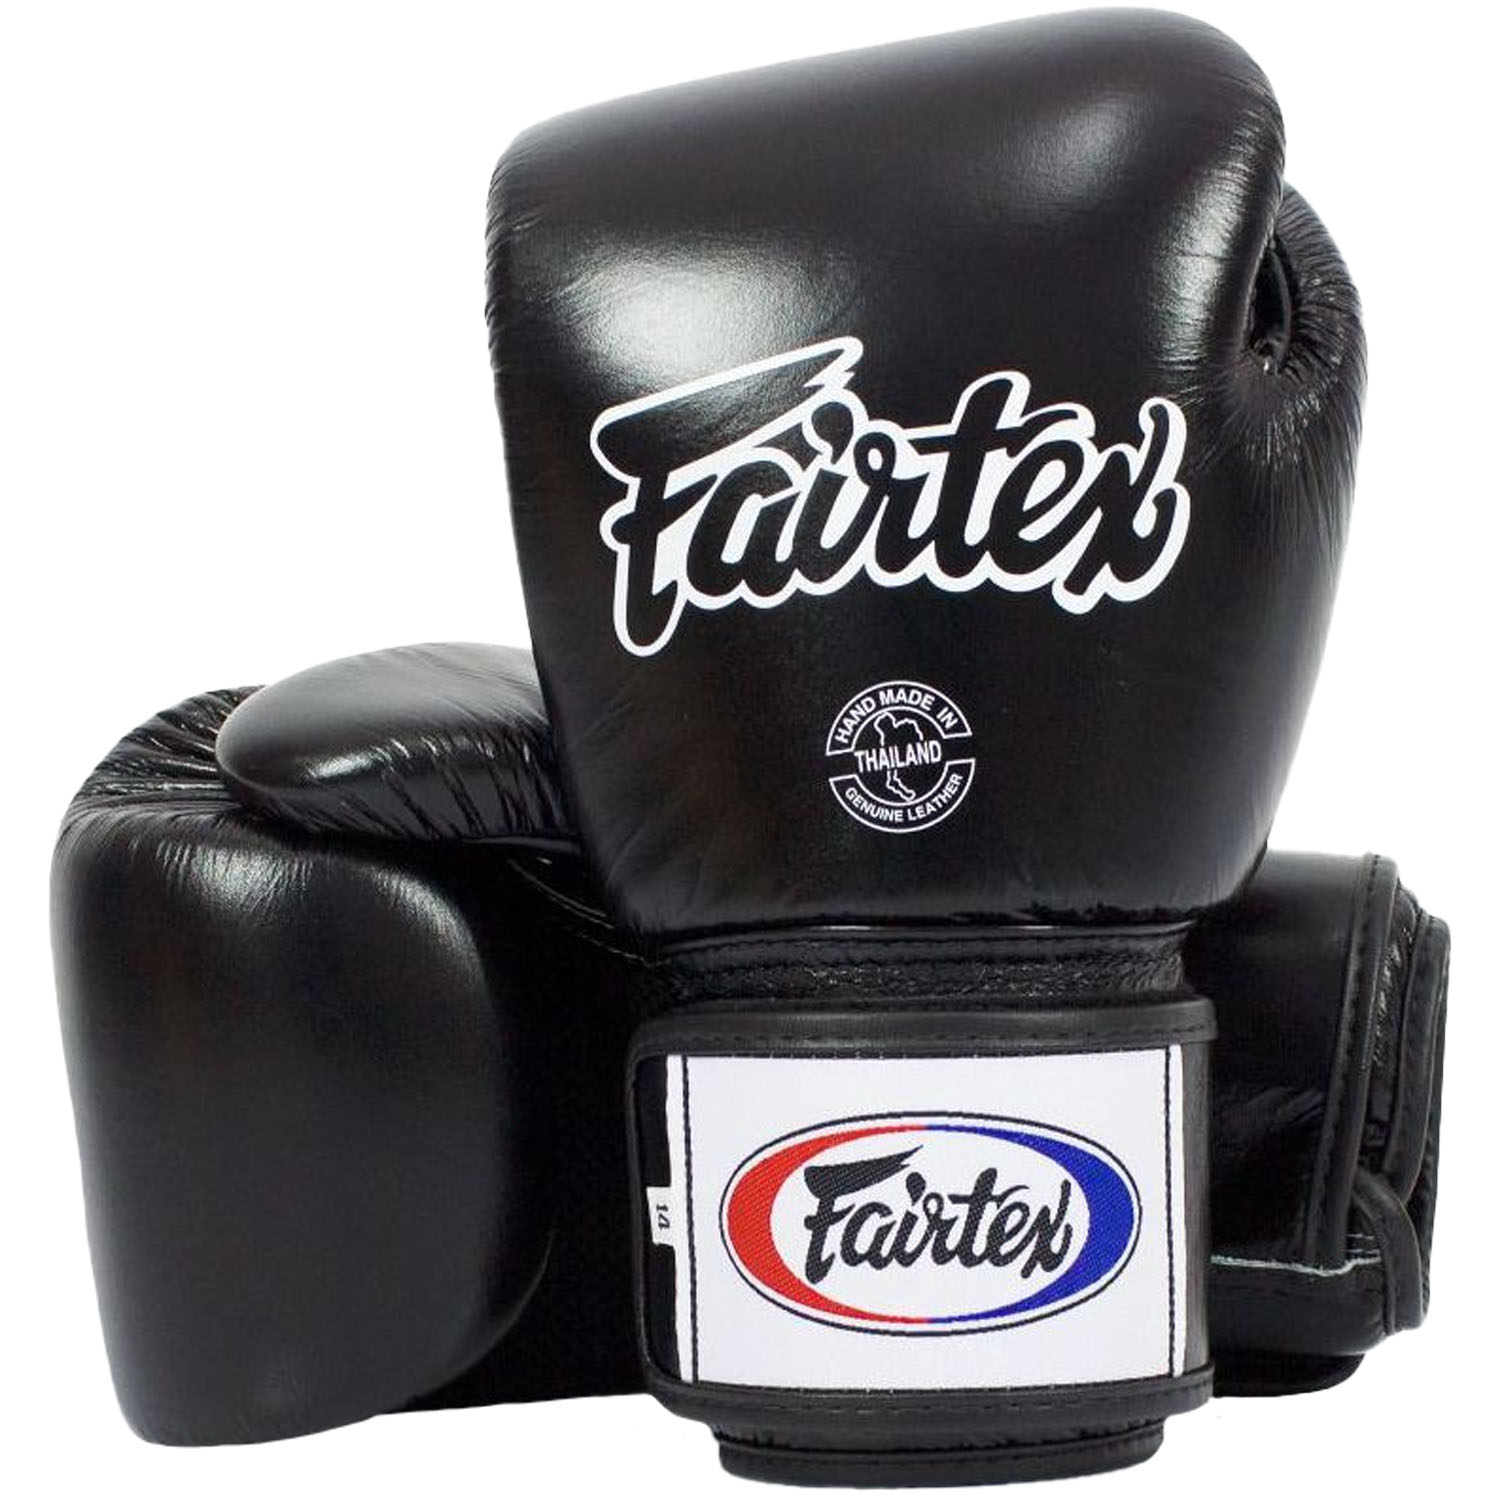 Fairtex Boxing Gloves, BGV1 AIR, black